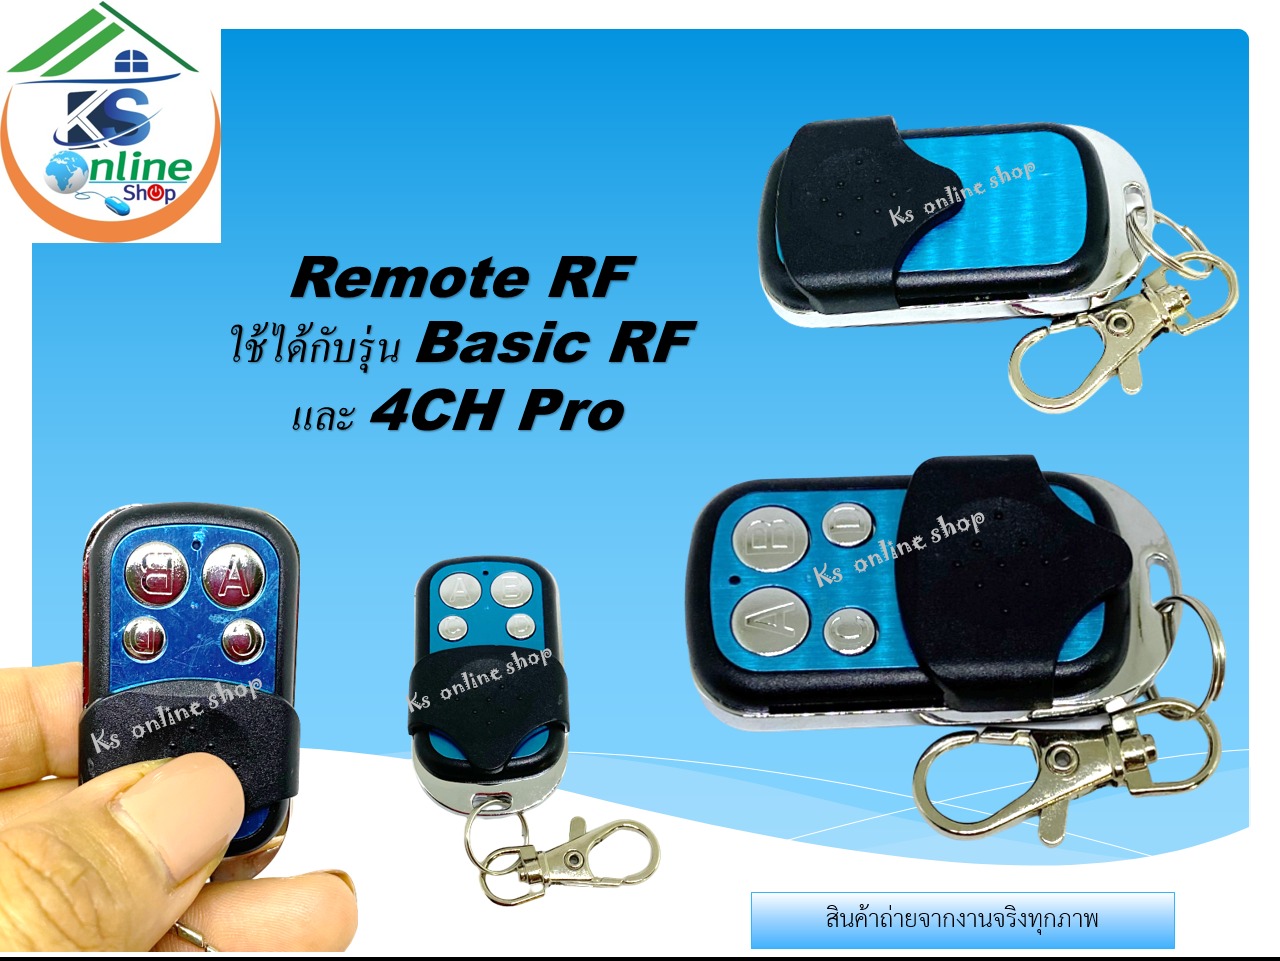 SONOFF Basic Wireless Remote Switch สวิทช์อัจฉริยะ สั่งงานผ่านมือถือ